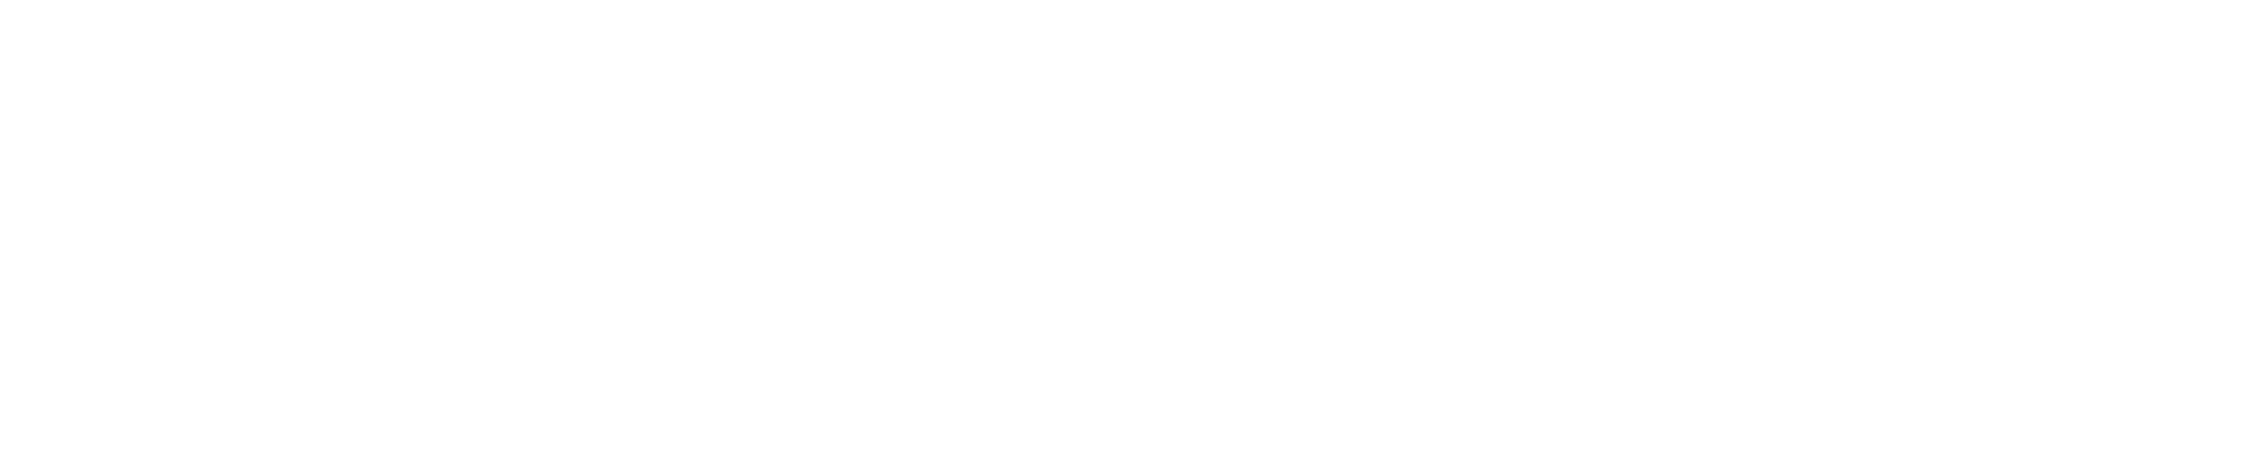 Brussels School of Engineering